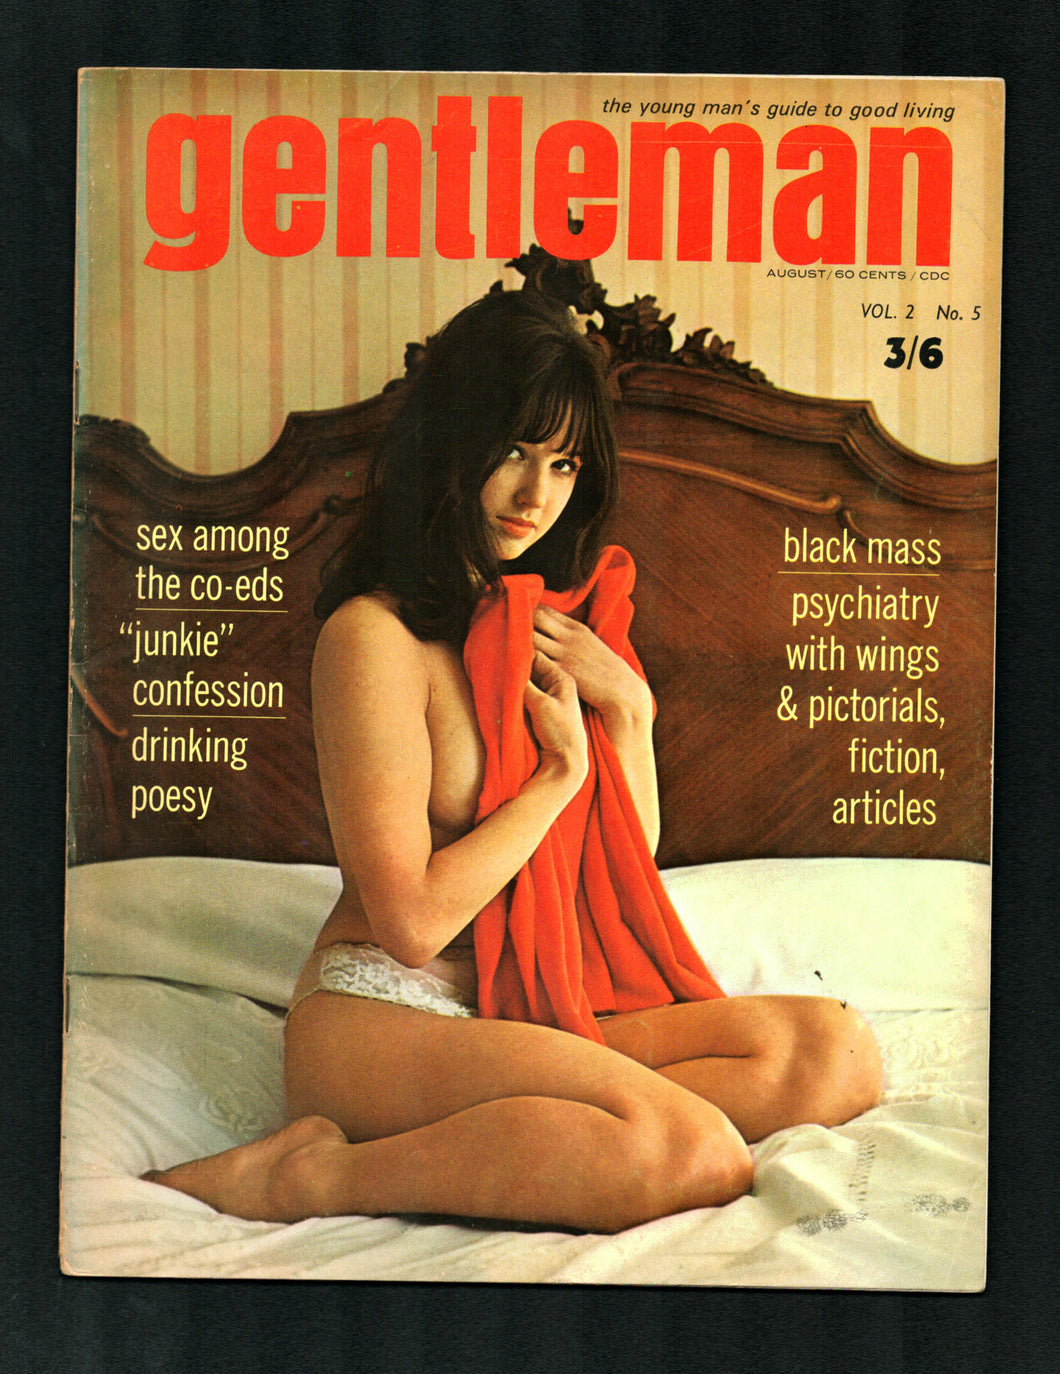 Gentleman Vol 3 No 7 Aug 1963